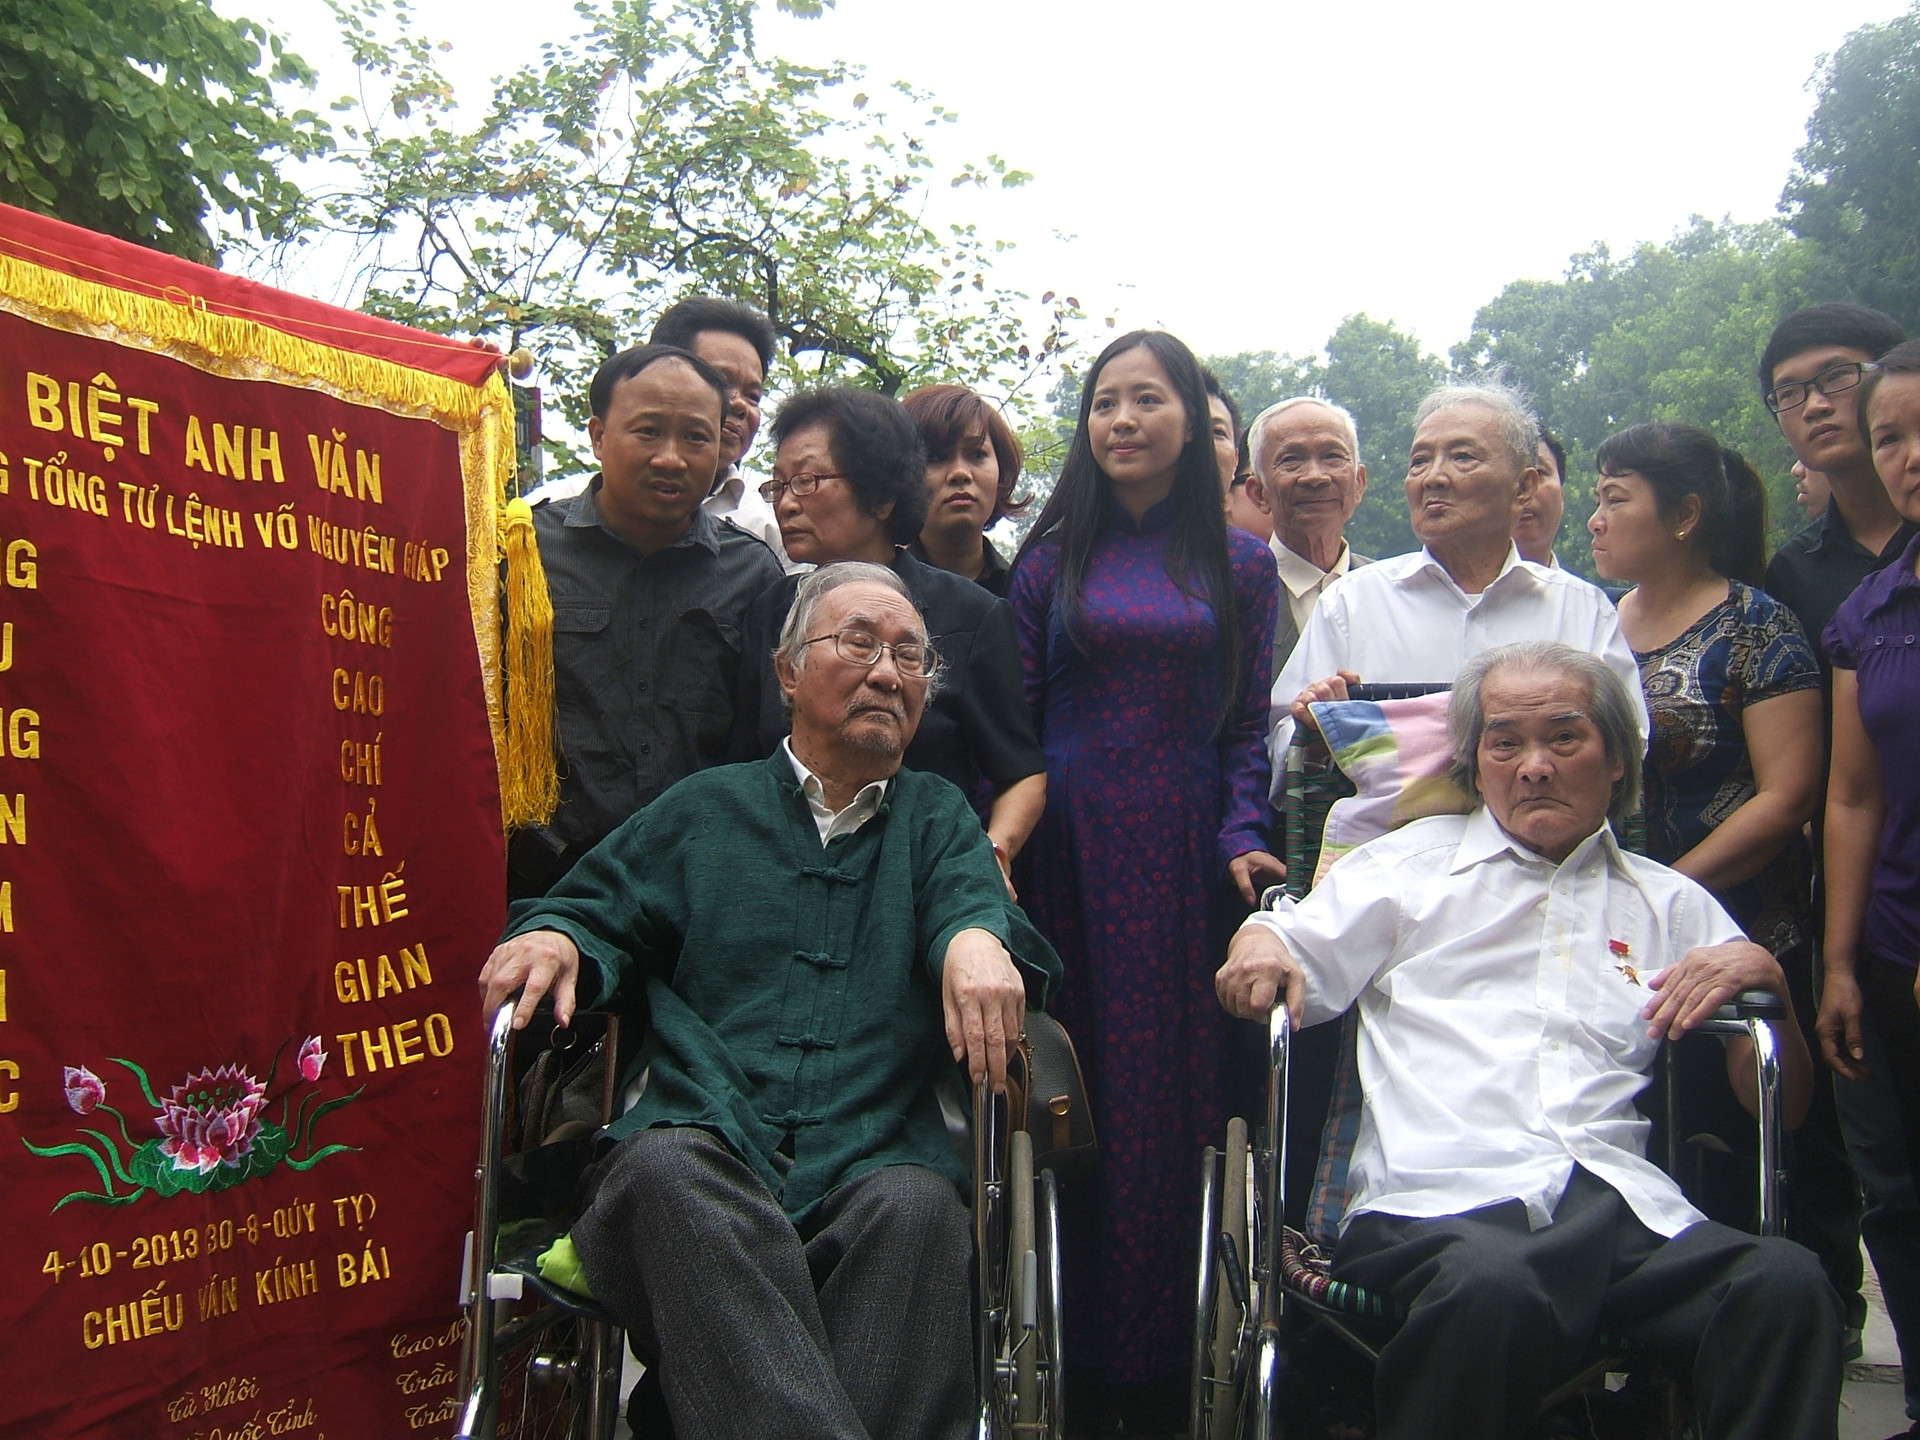 Học giả, giáo sư Phan Ngọc (bìa trái) và AHLĐ nhà văn Sơn Tùng đi xe lăn tới viếng tang Đại tướng Võ Nguyên Giáp năm 2013.